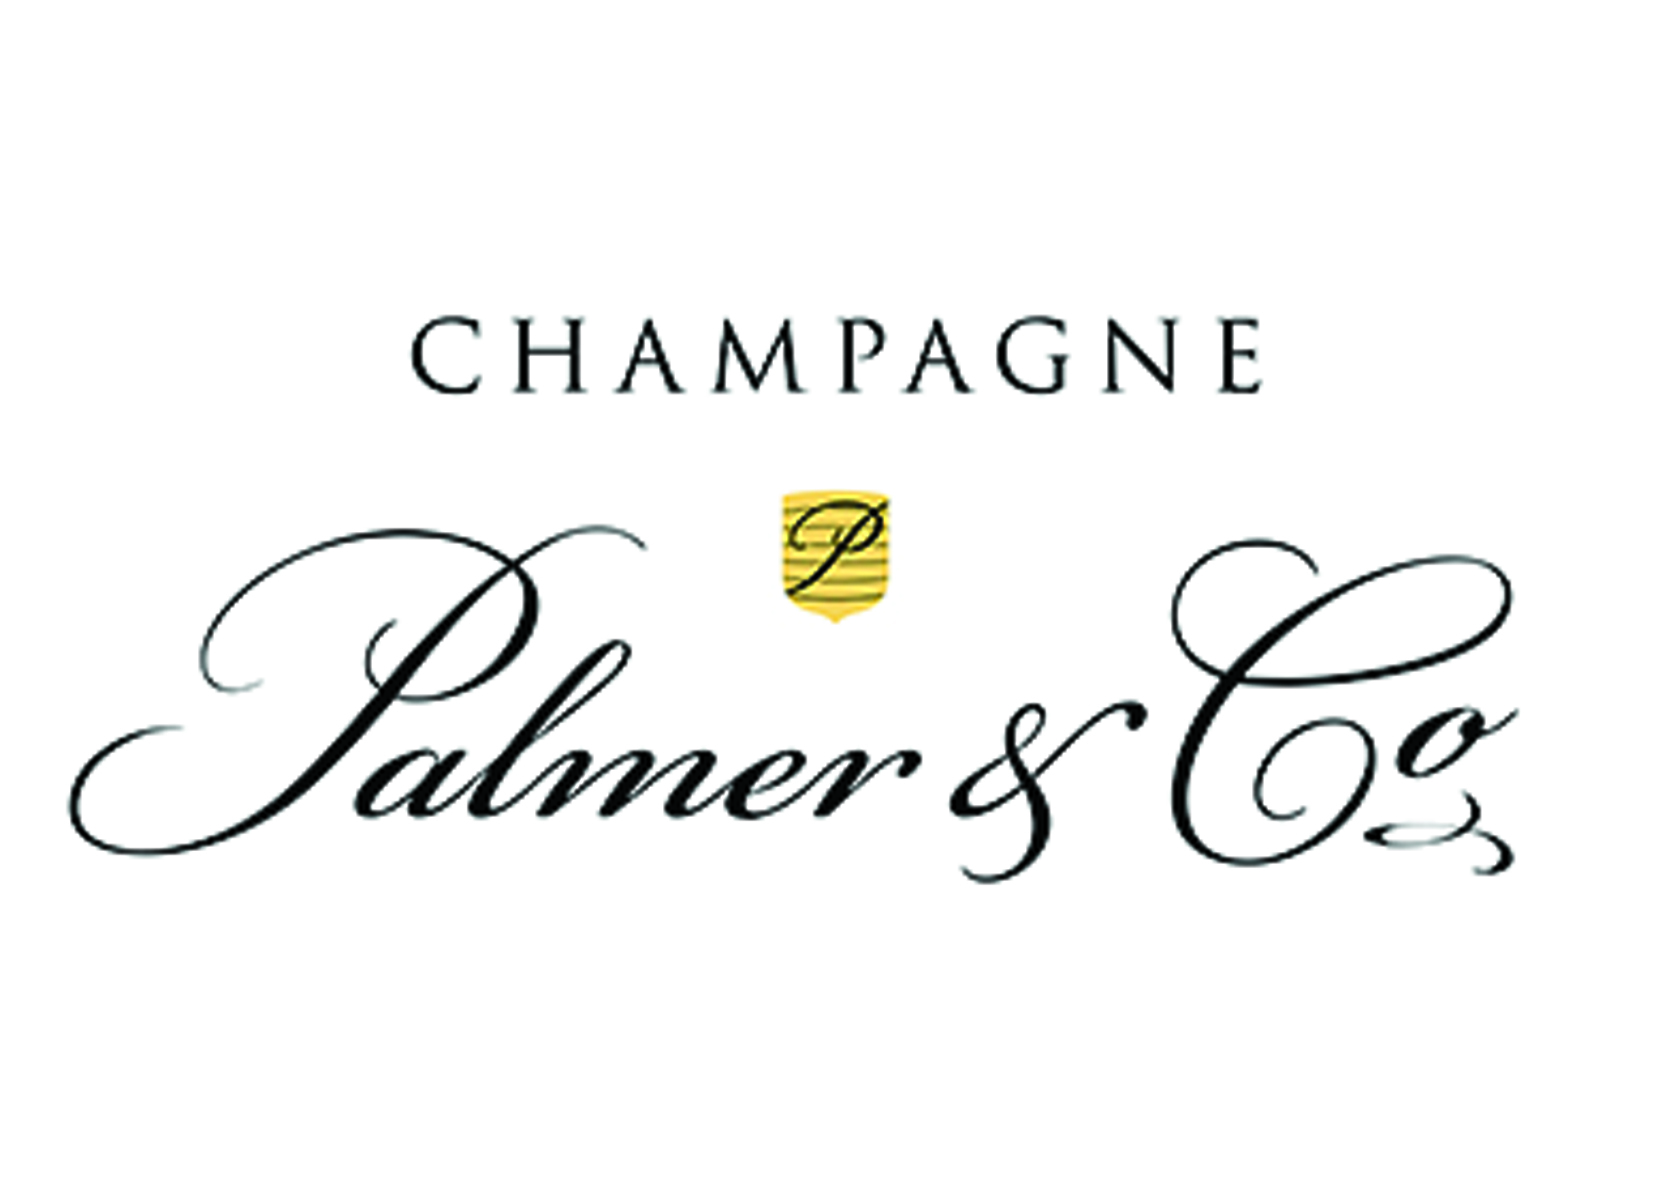 champagne palmer et co - partenaire ce avantages business evry business